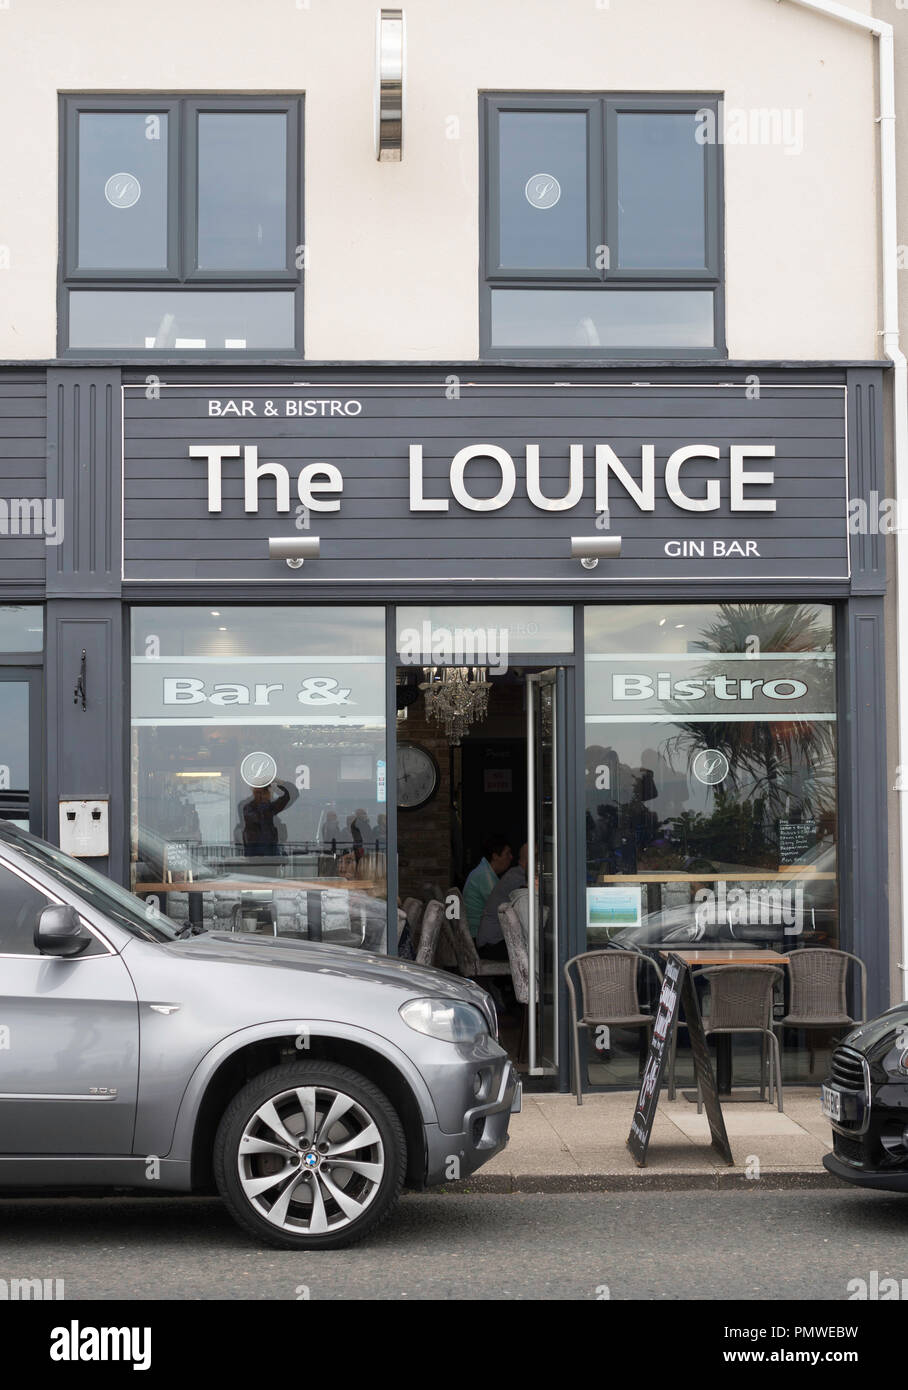 Le salon, un bar et bistro front de gin, Seaham, Co Durham, England, UK Banque D'Images